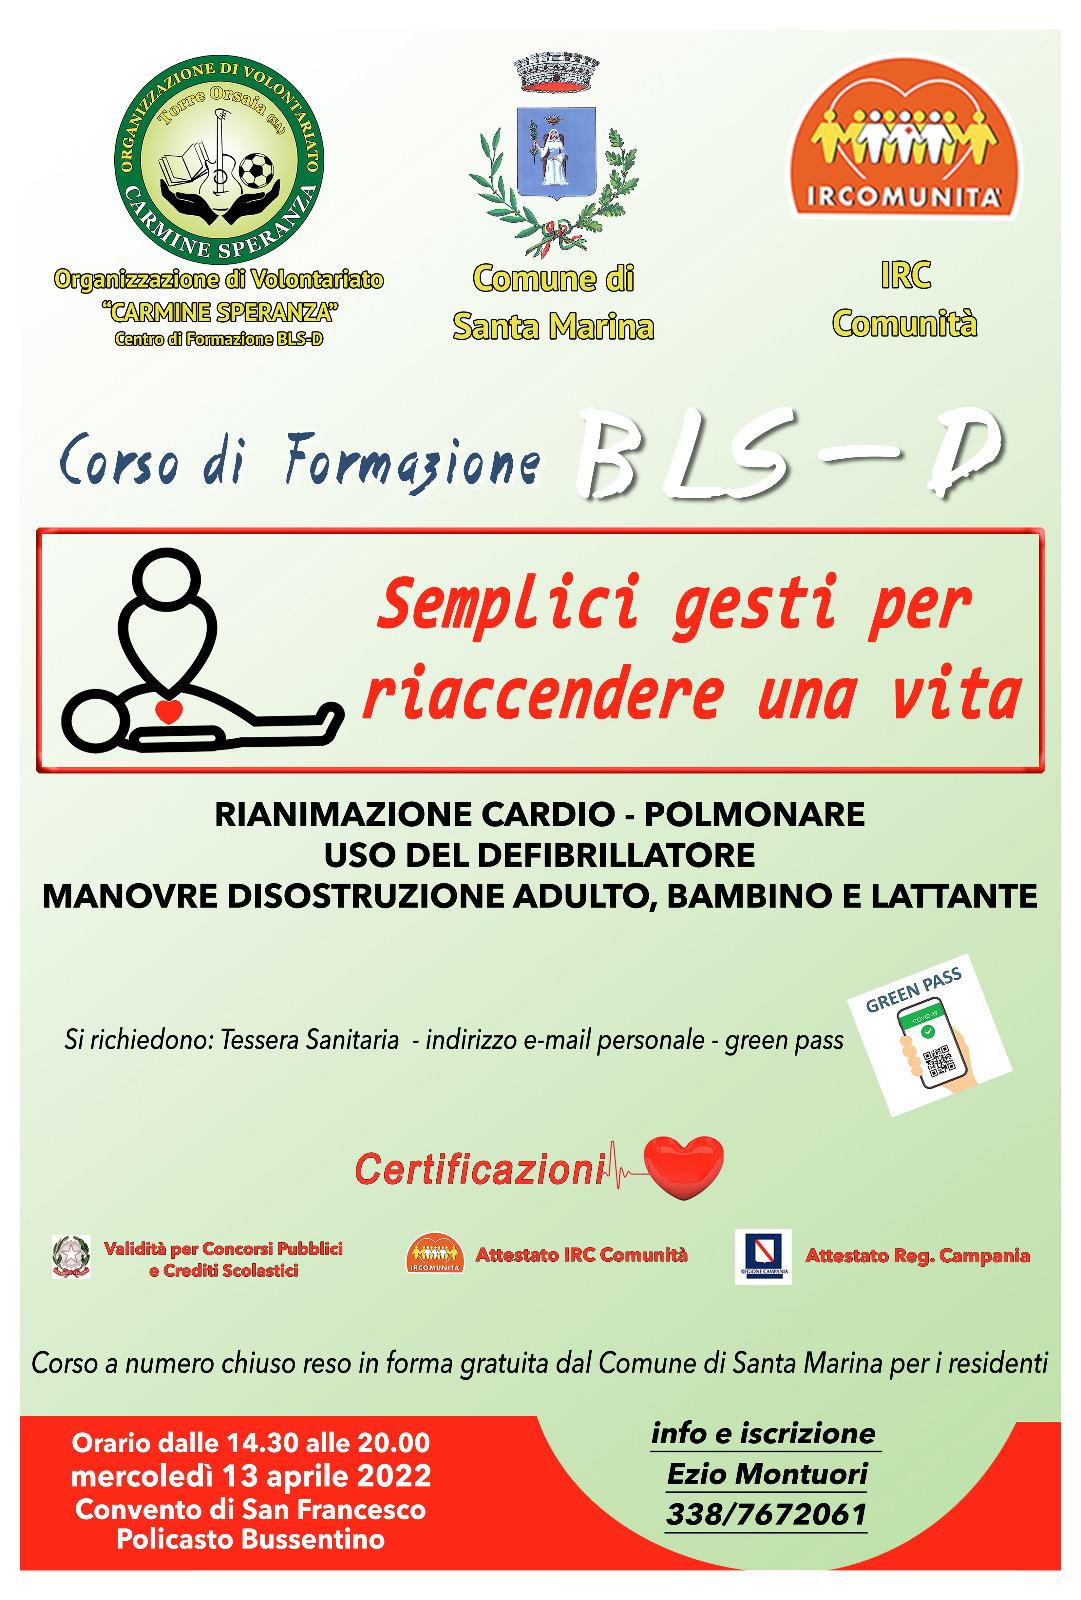 Santa Marina “cardioprotetta”, organizzato corso di formazione BLS-D: ecco come partecipare